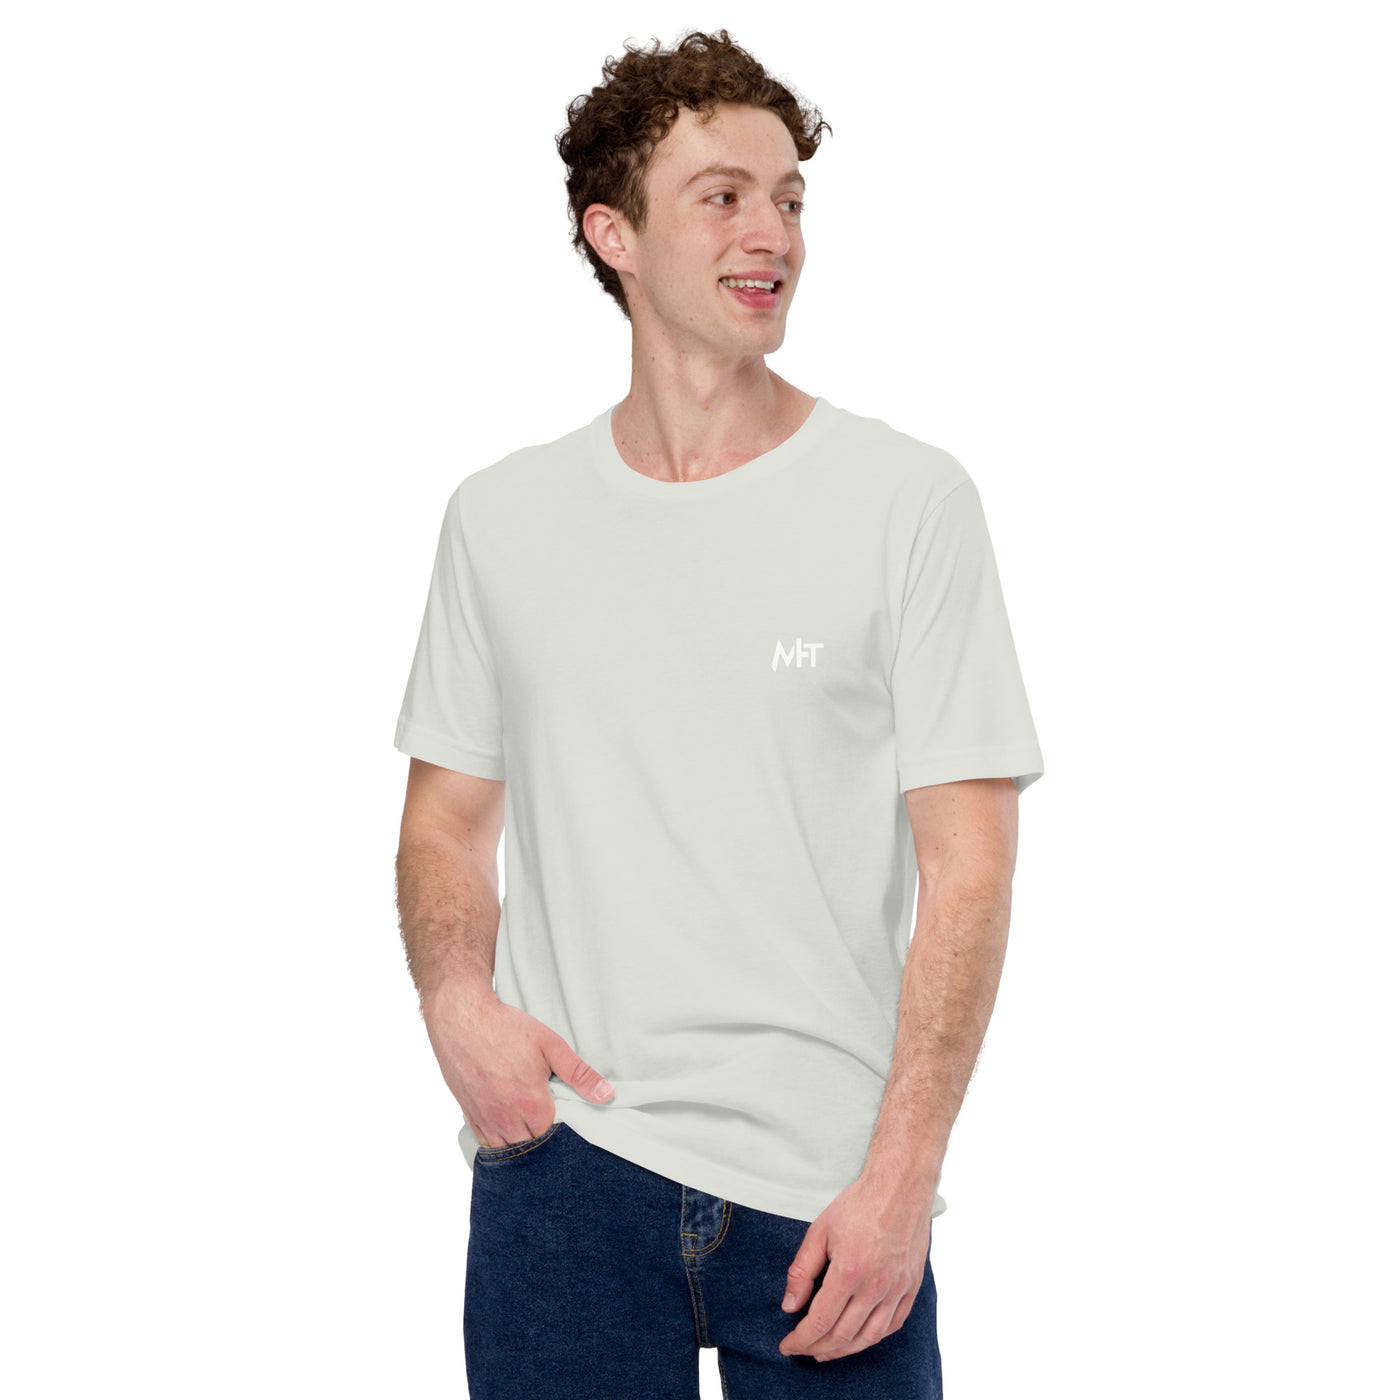 I'm thinking - Unisex t-shirt (back print)